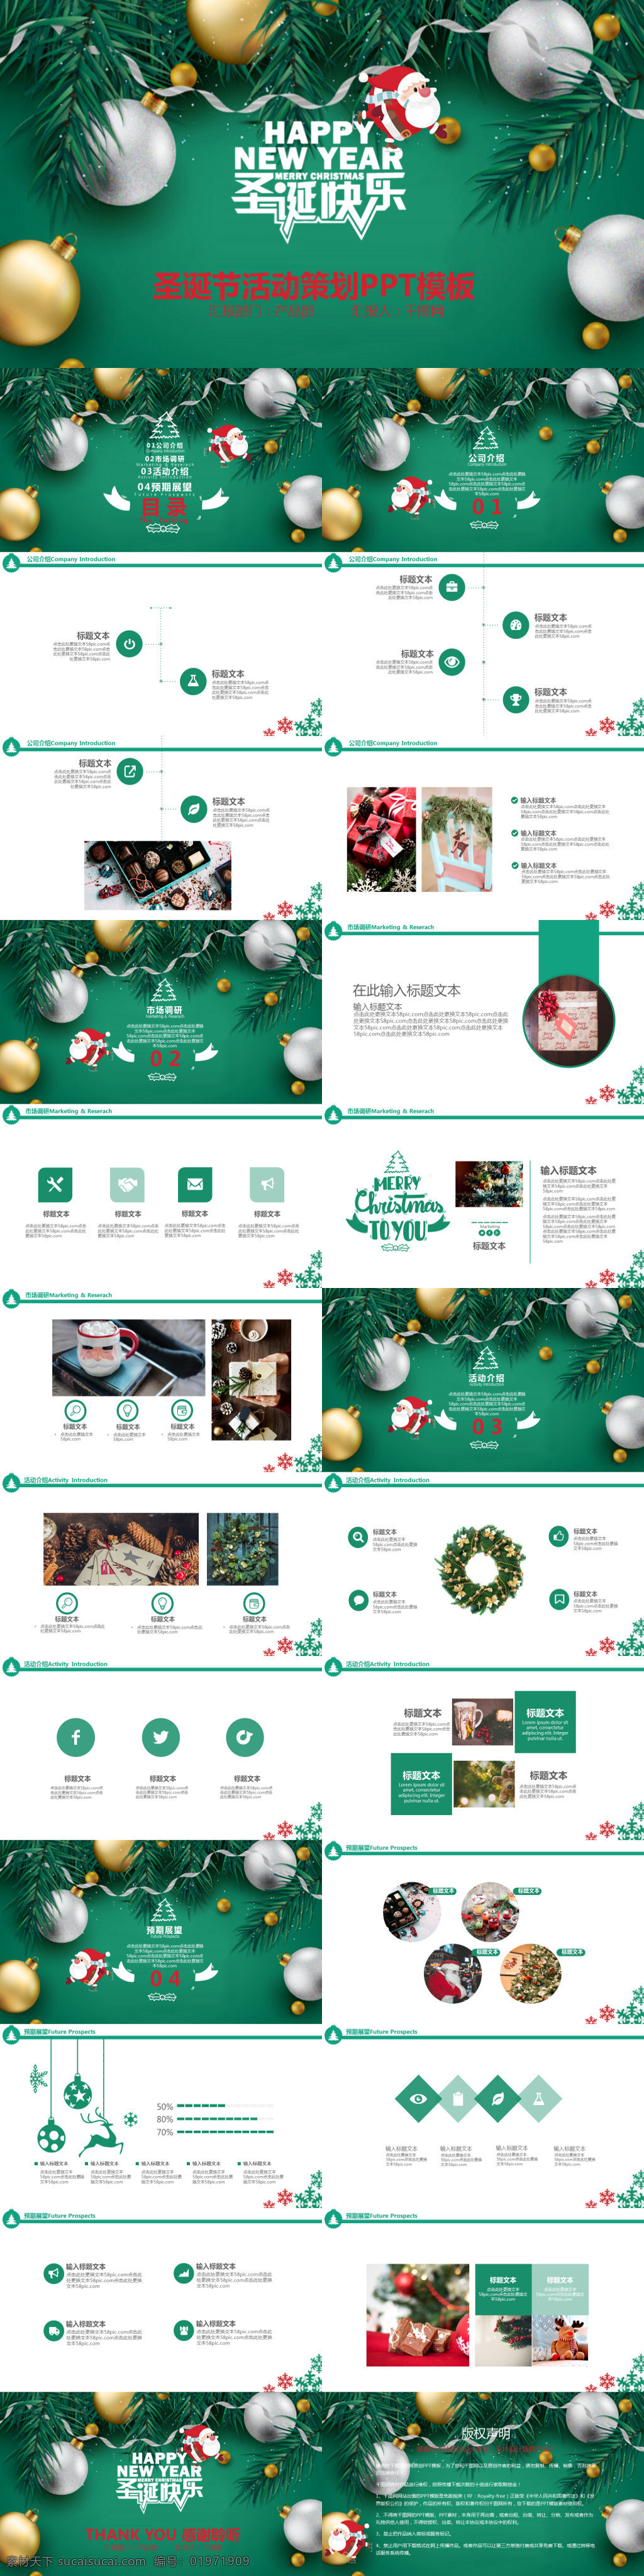 绿色 圣诞节 活动 宣传 策划 模板 商务 通用 欧美风 节日庆典